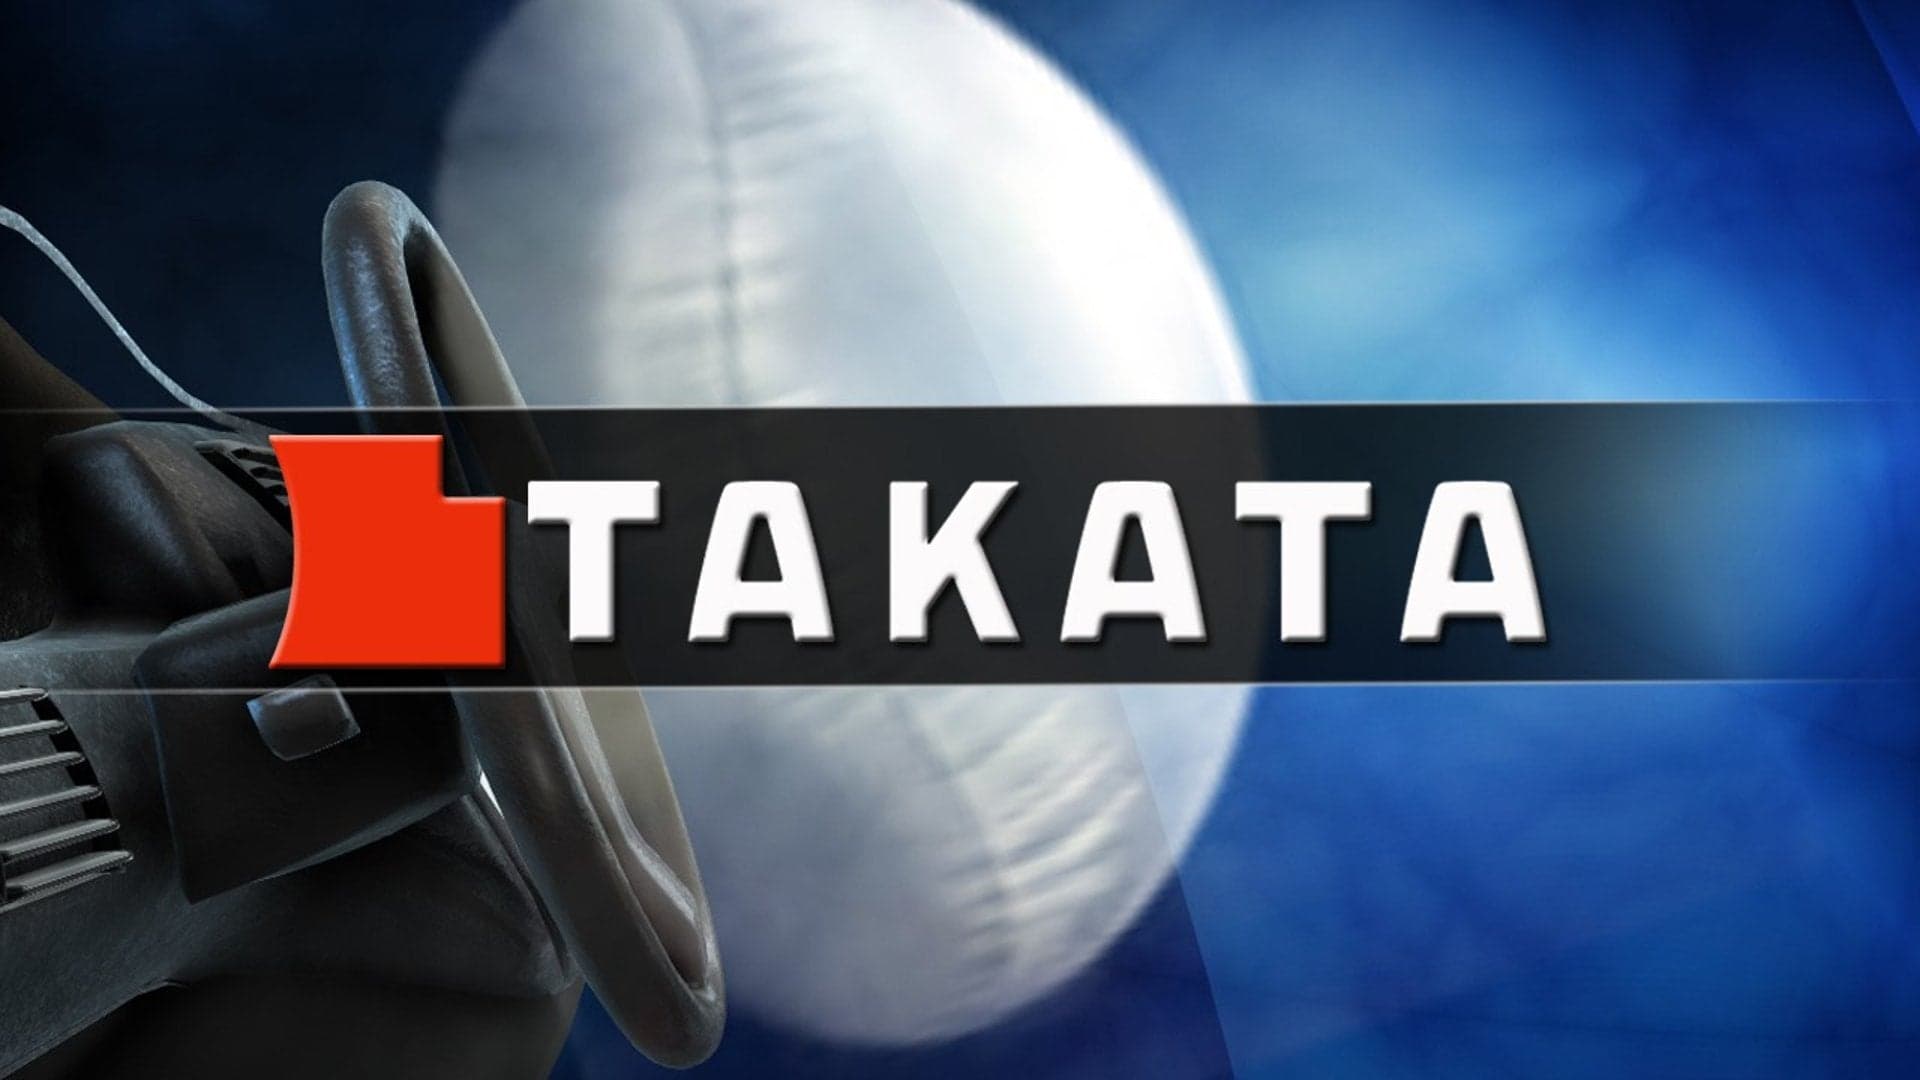 Beleaguered Takata Sells Bulk of Assets for $1.6 Billion